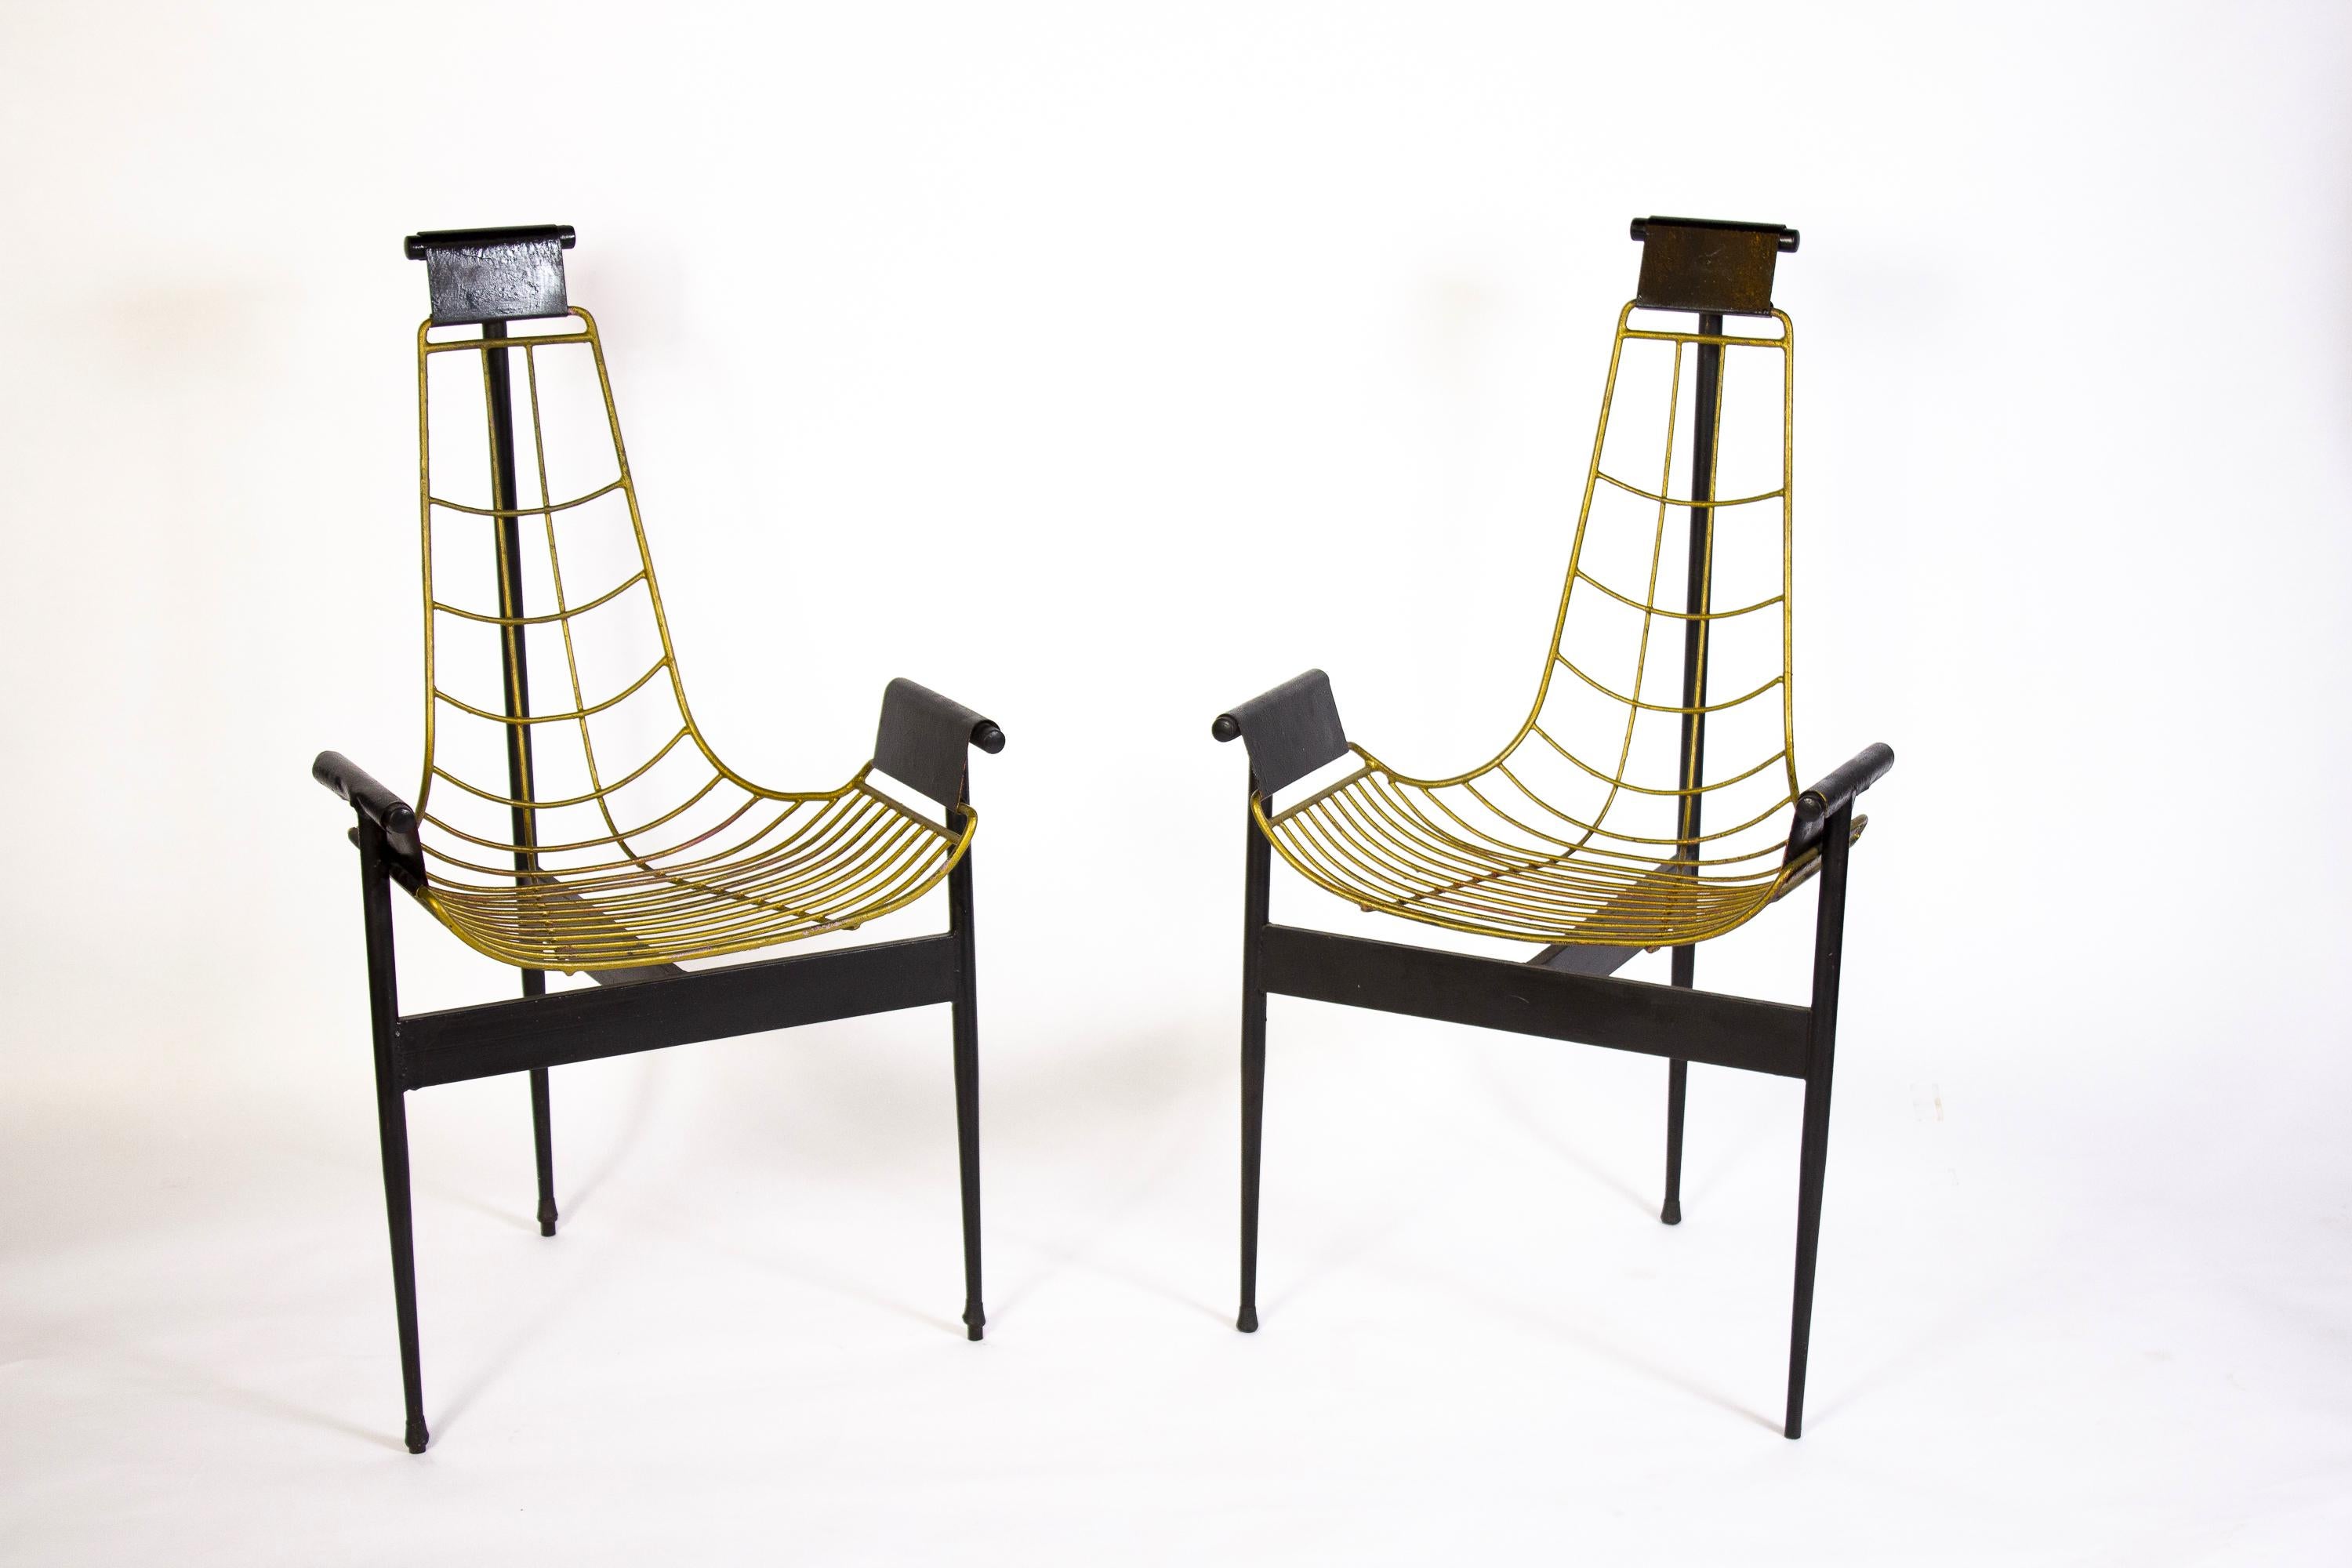 William Katavolos entwarf 1952 in Zusammenarbeit mit Douglas Kelley und Ross Littell den ikonischen Sling-Back T Chair als Modell 3LC der skulpturalen New Furniture Serie von Laverne International.
Gestell aus schwarz lackiertem Stahlrohr und